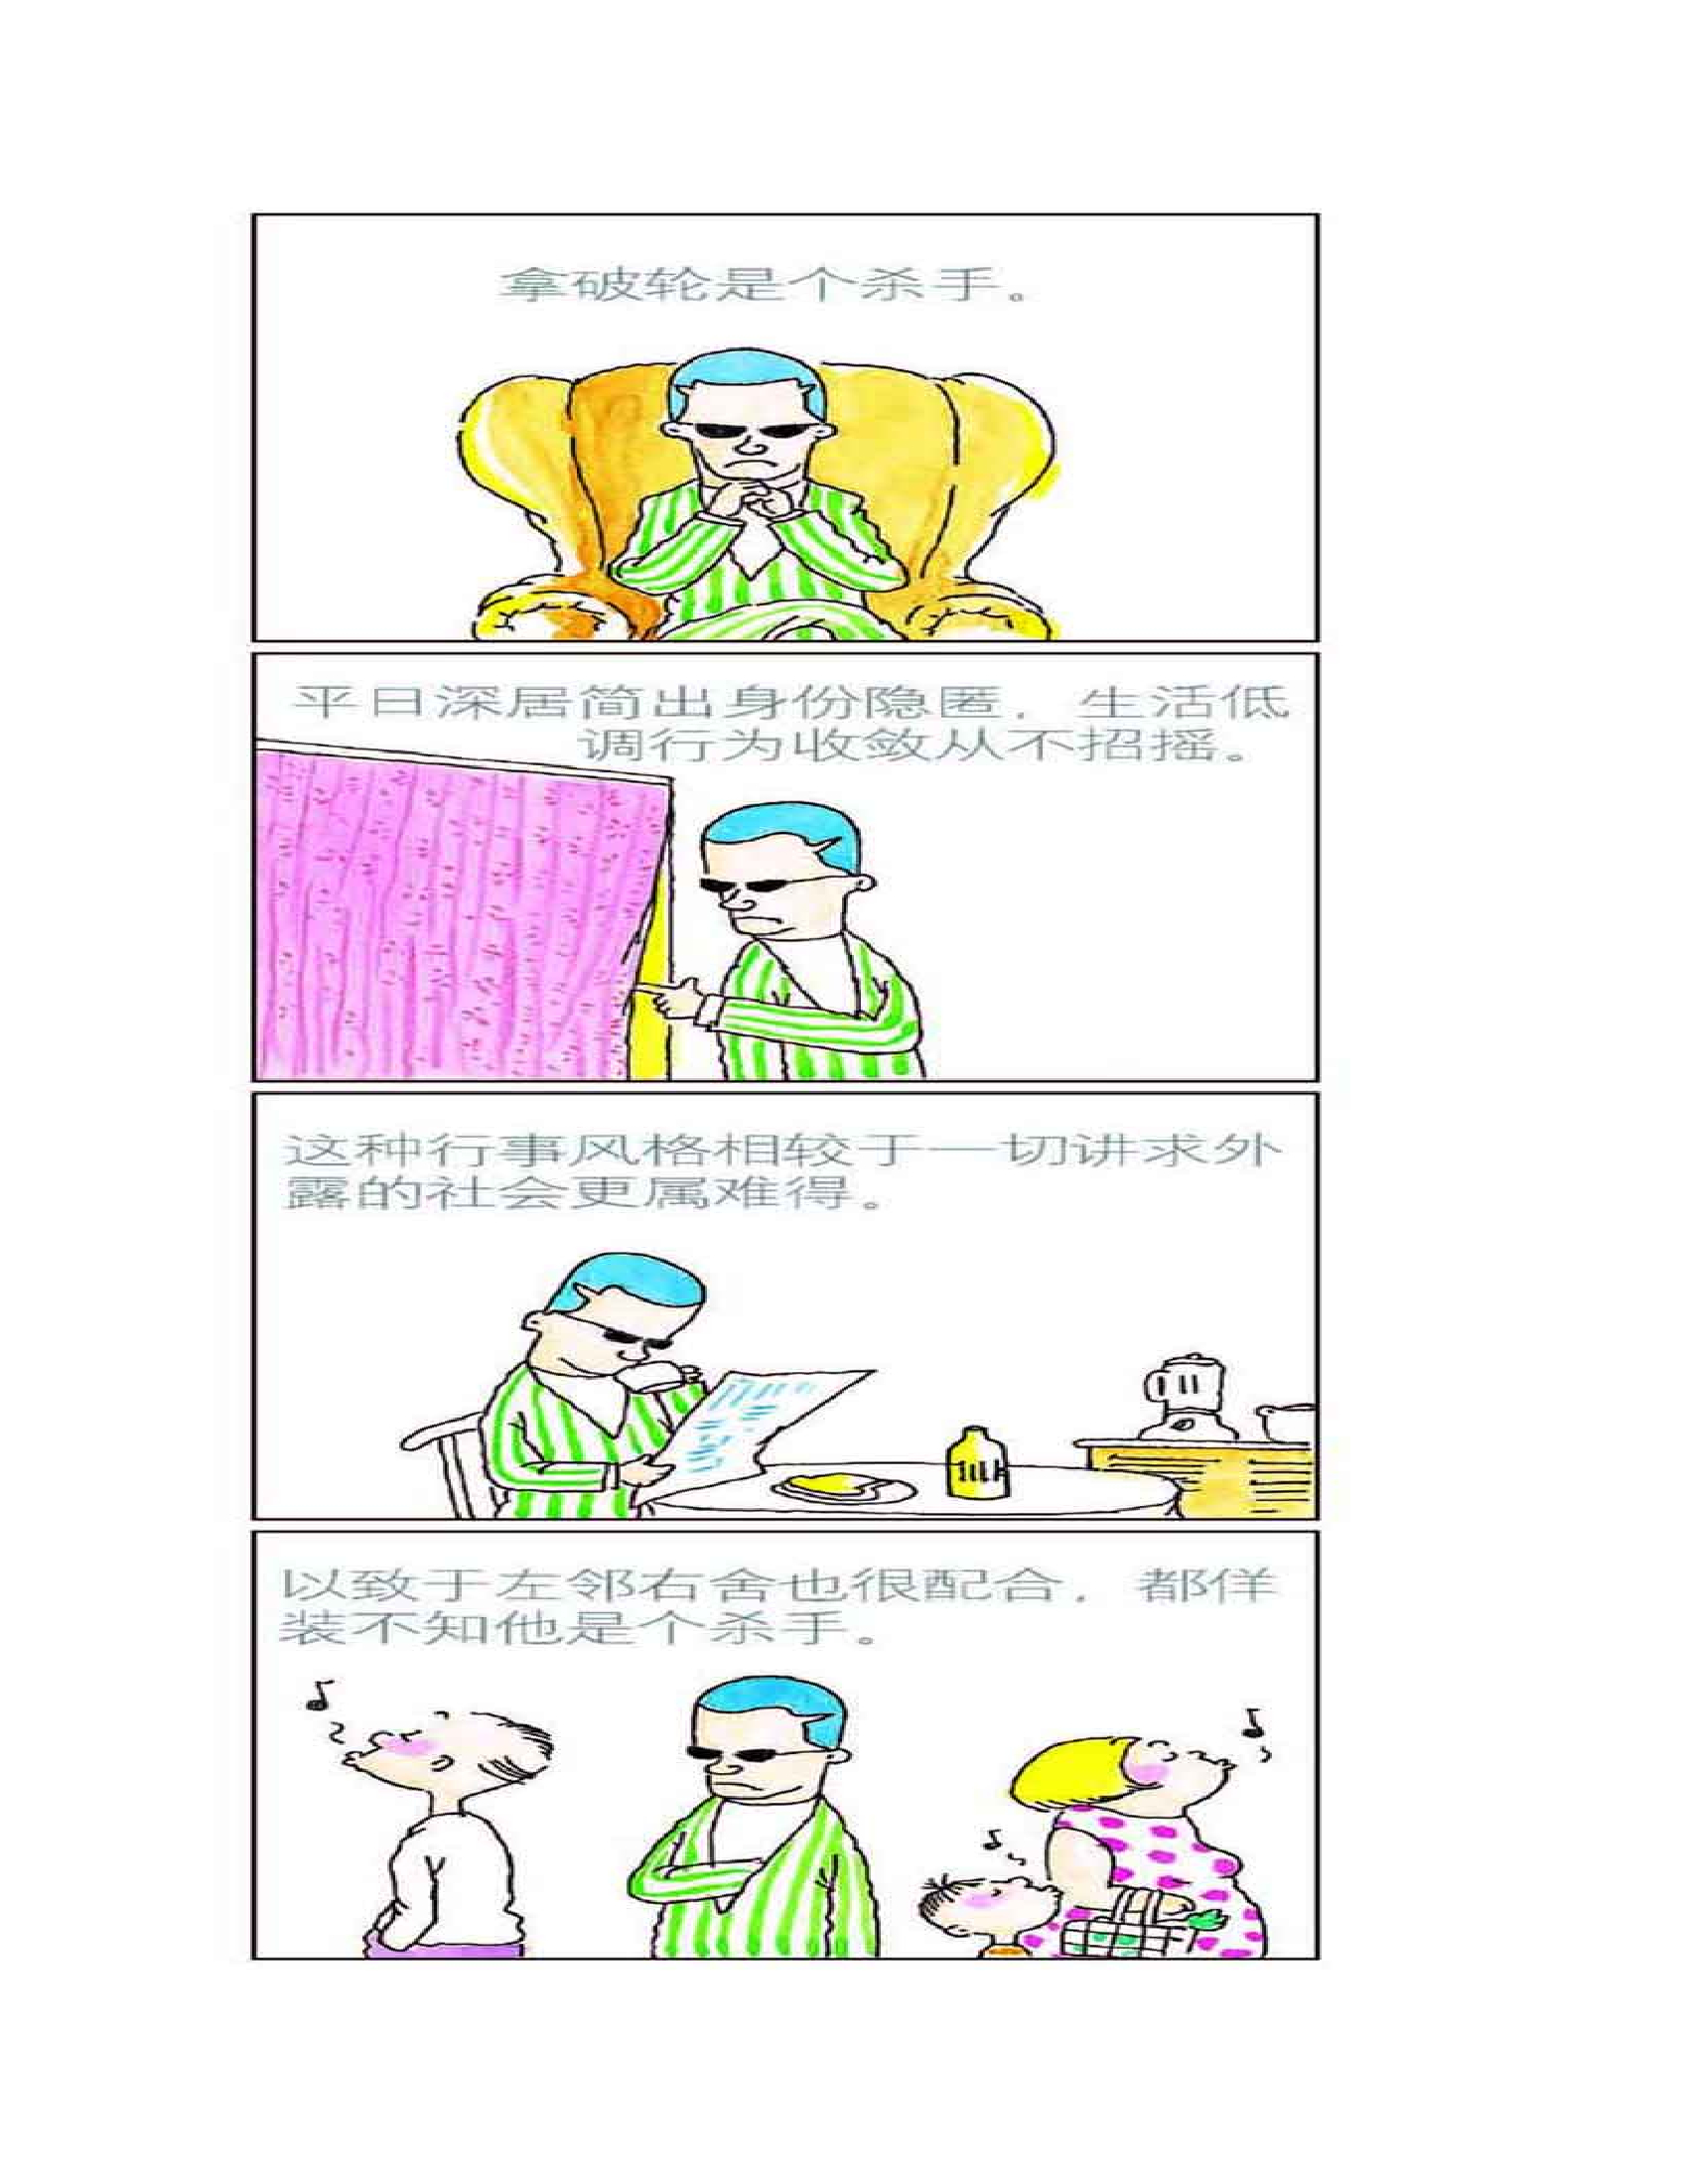 【漫画集】 中国漫画家朱德庸《大家都有病》 - 哔哩哔哩